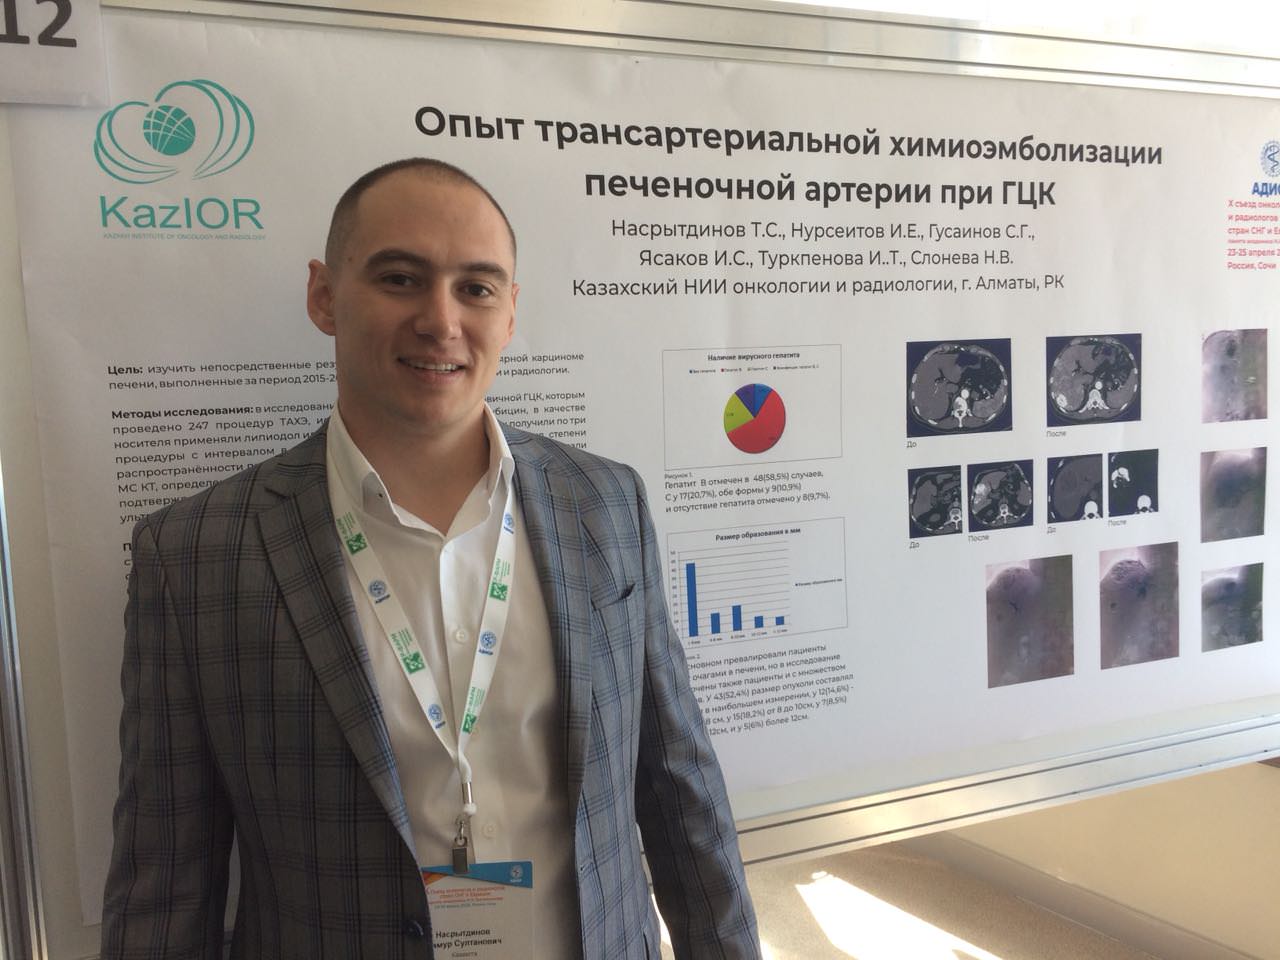 (RU) Сотрудники КазНИИОиР выступили на Х съезде онкологов и радиологов